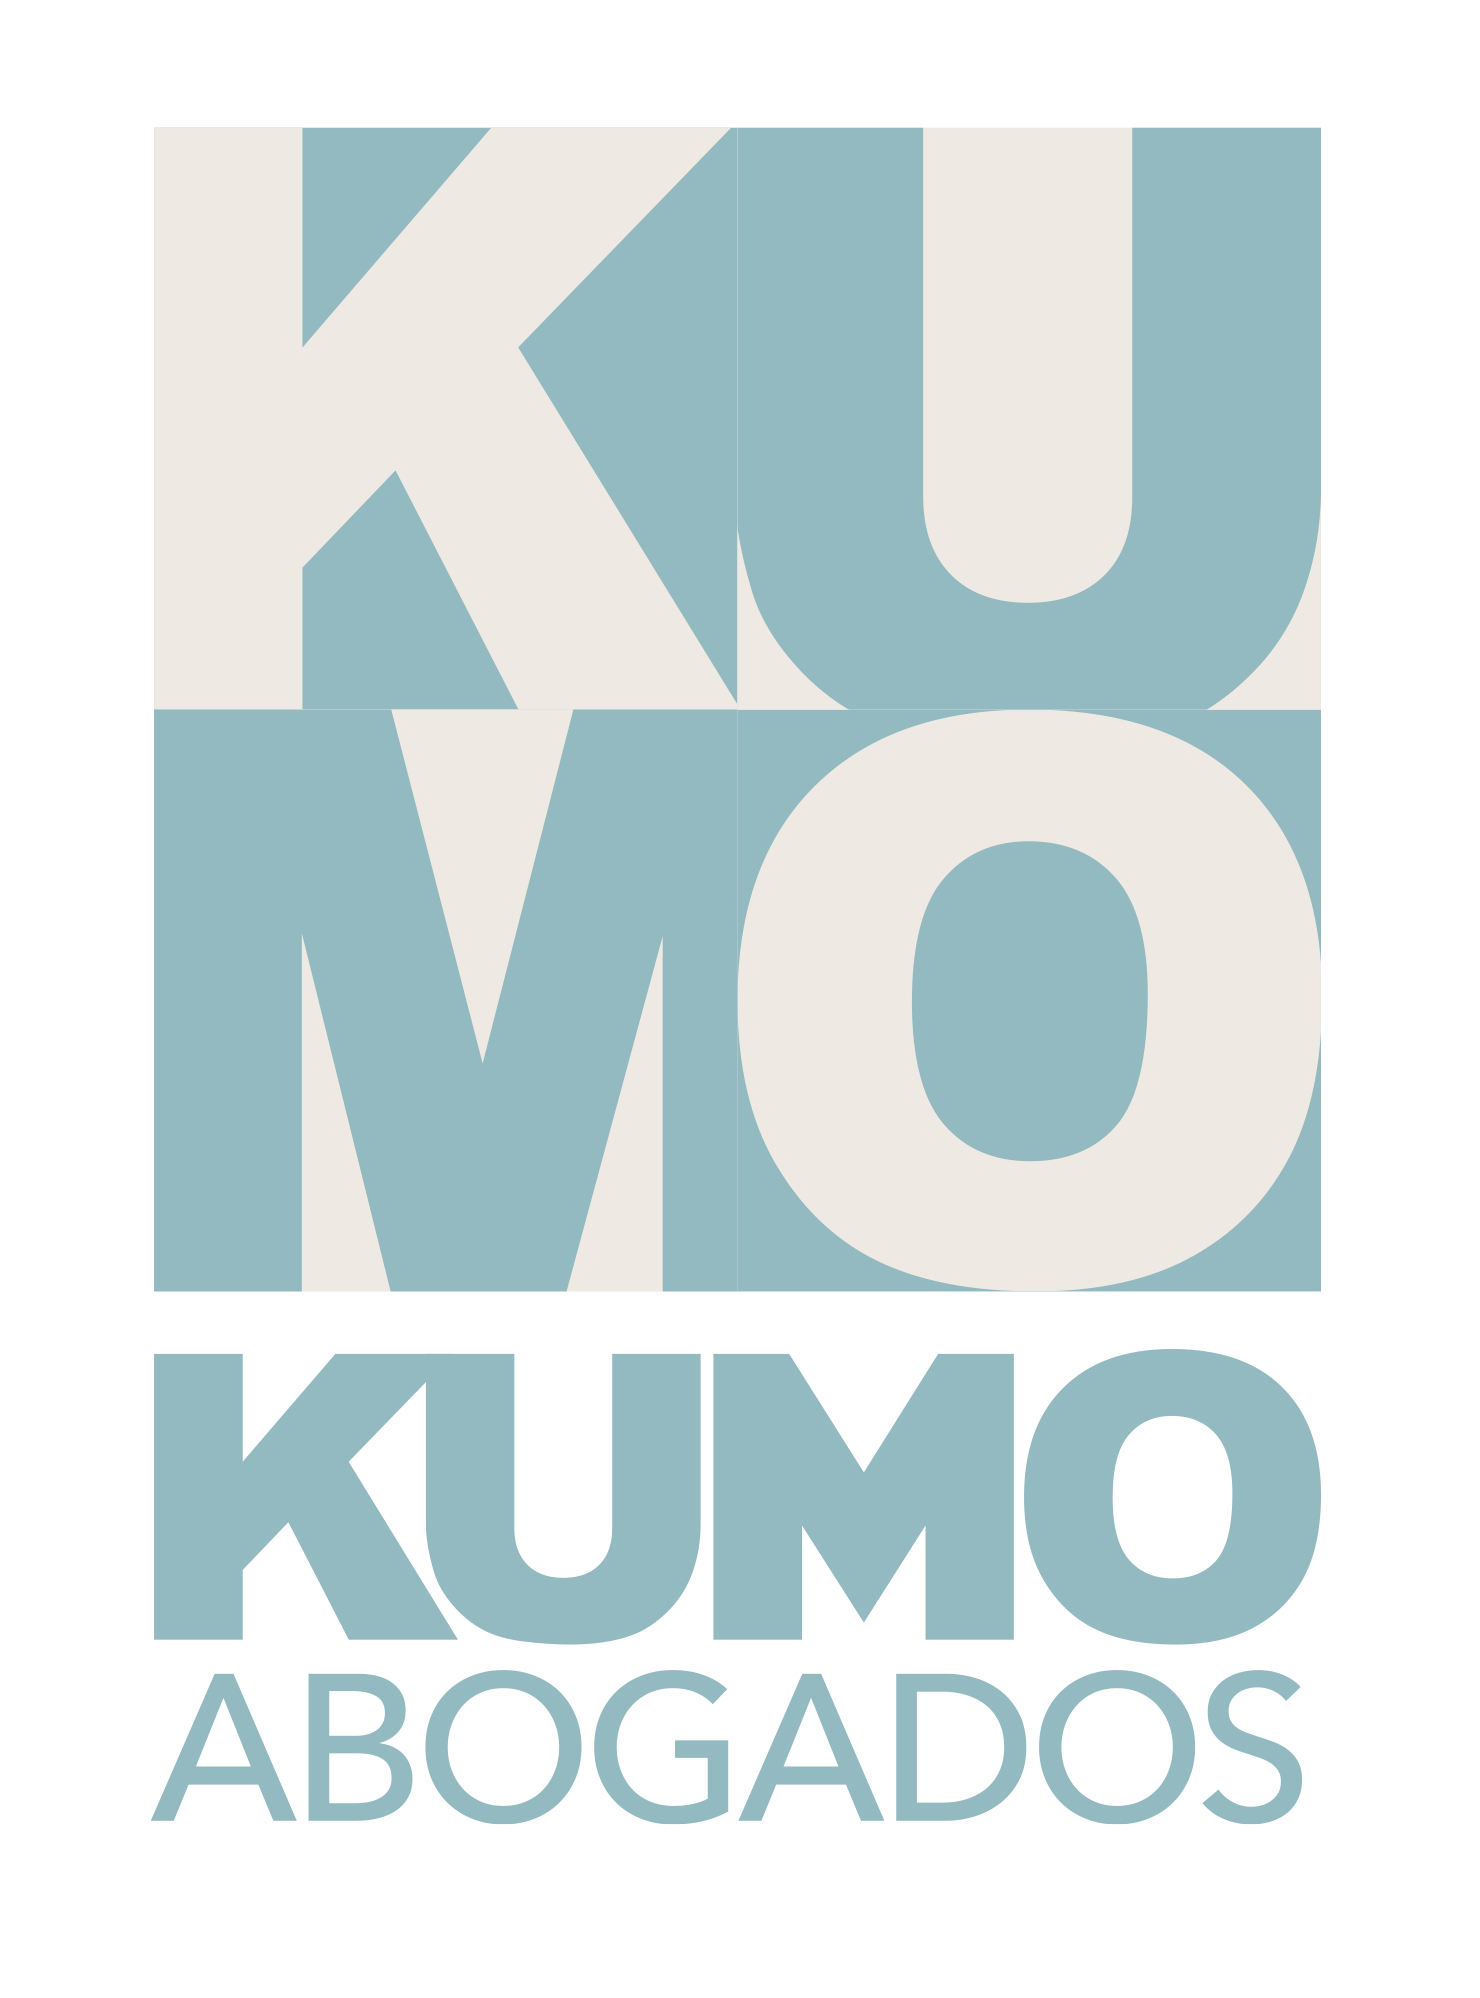 KUMO Abogados - Abogados especialistas en derecho civil y derecho laboral en San Vicente del Raspeig